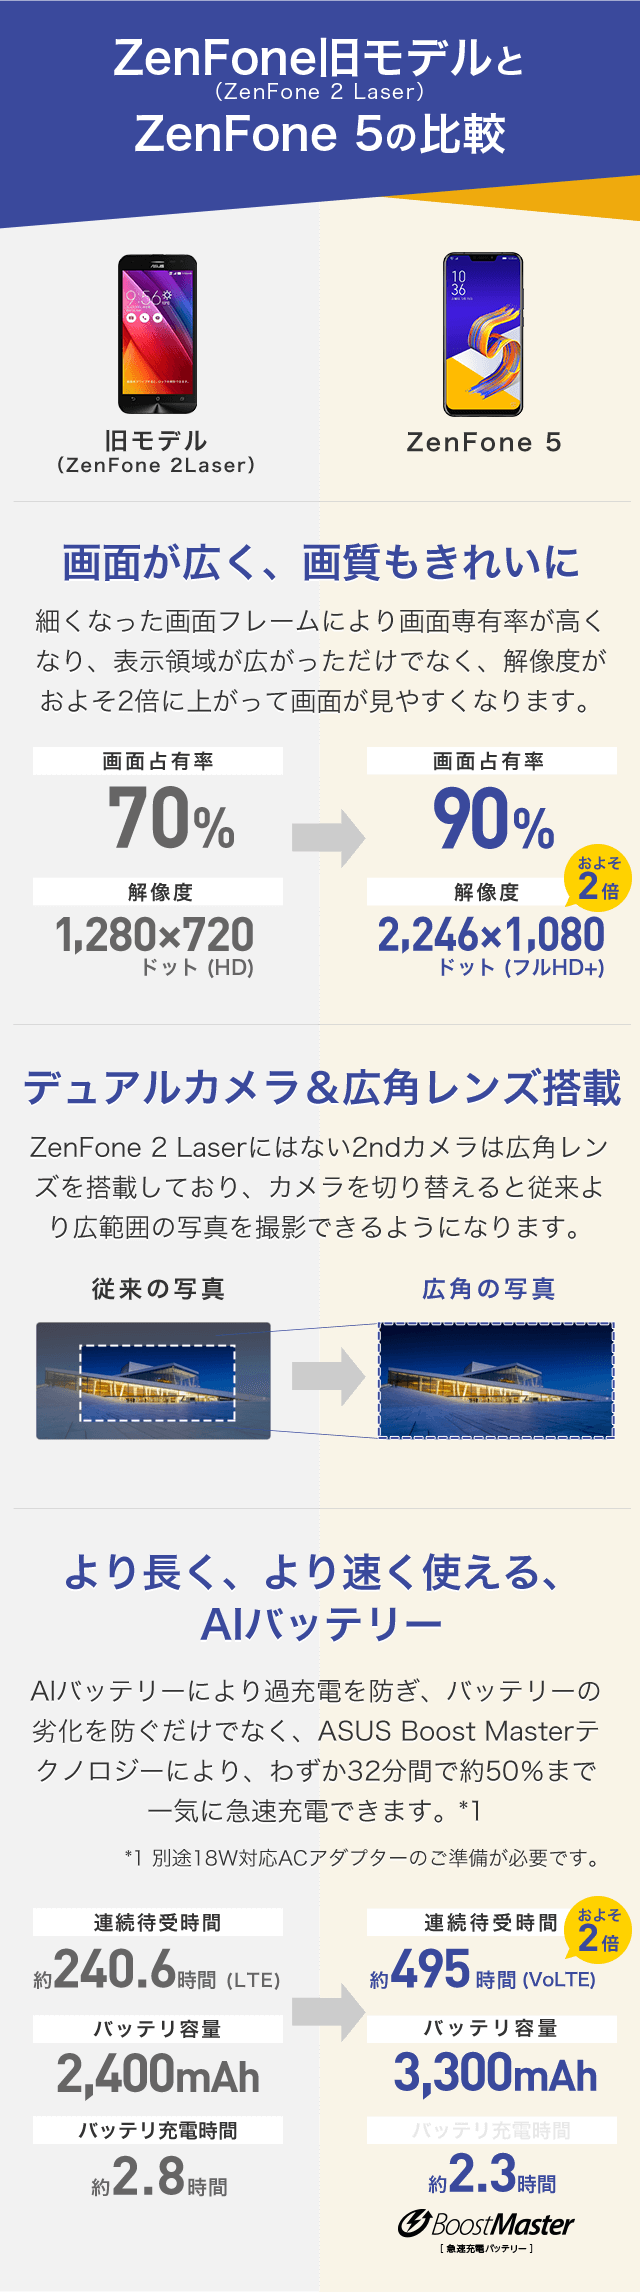 ZenFone旧モデルとZenFone 5の比較